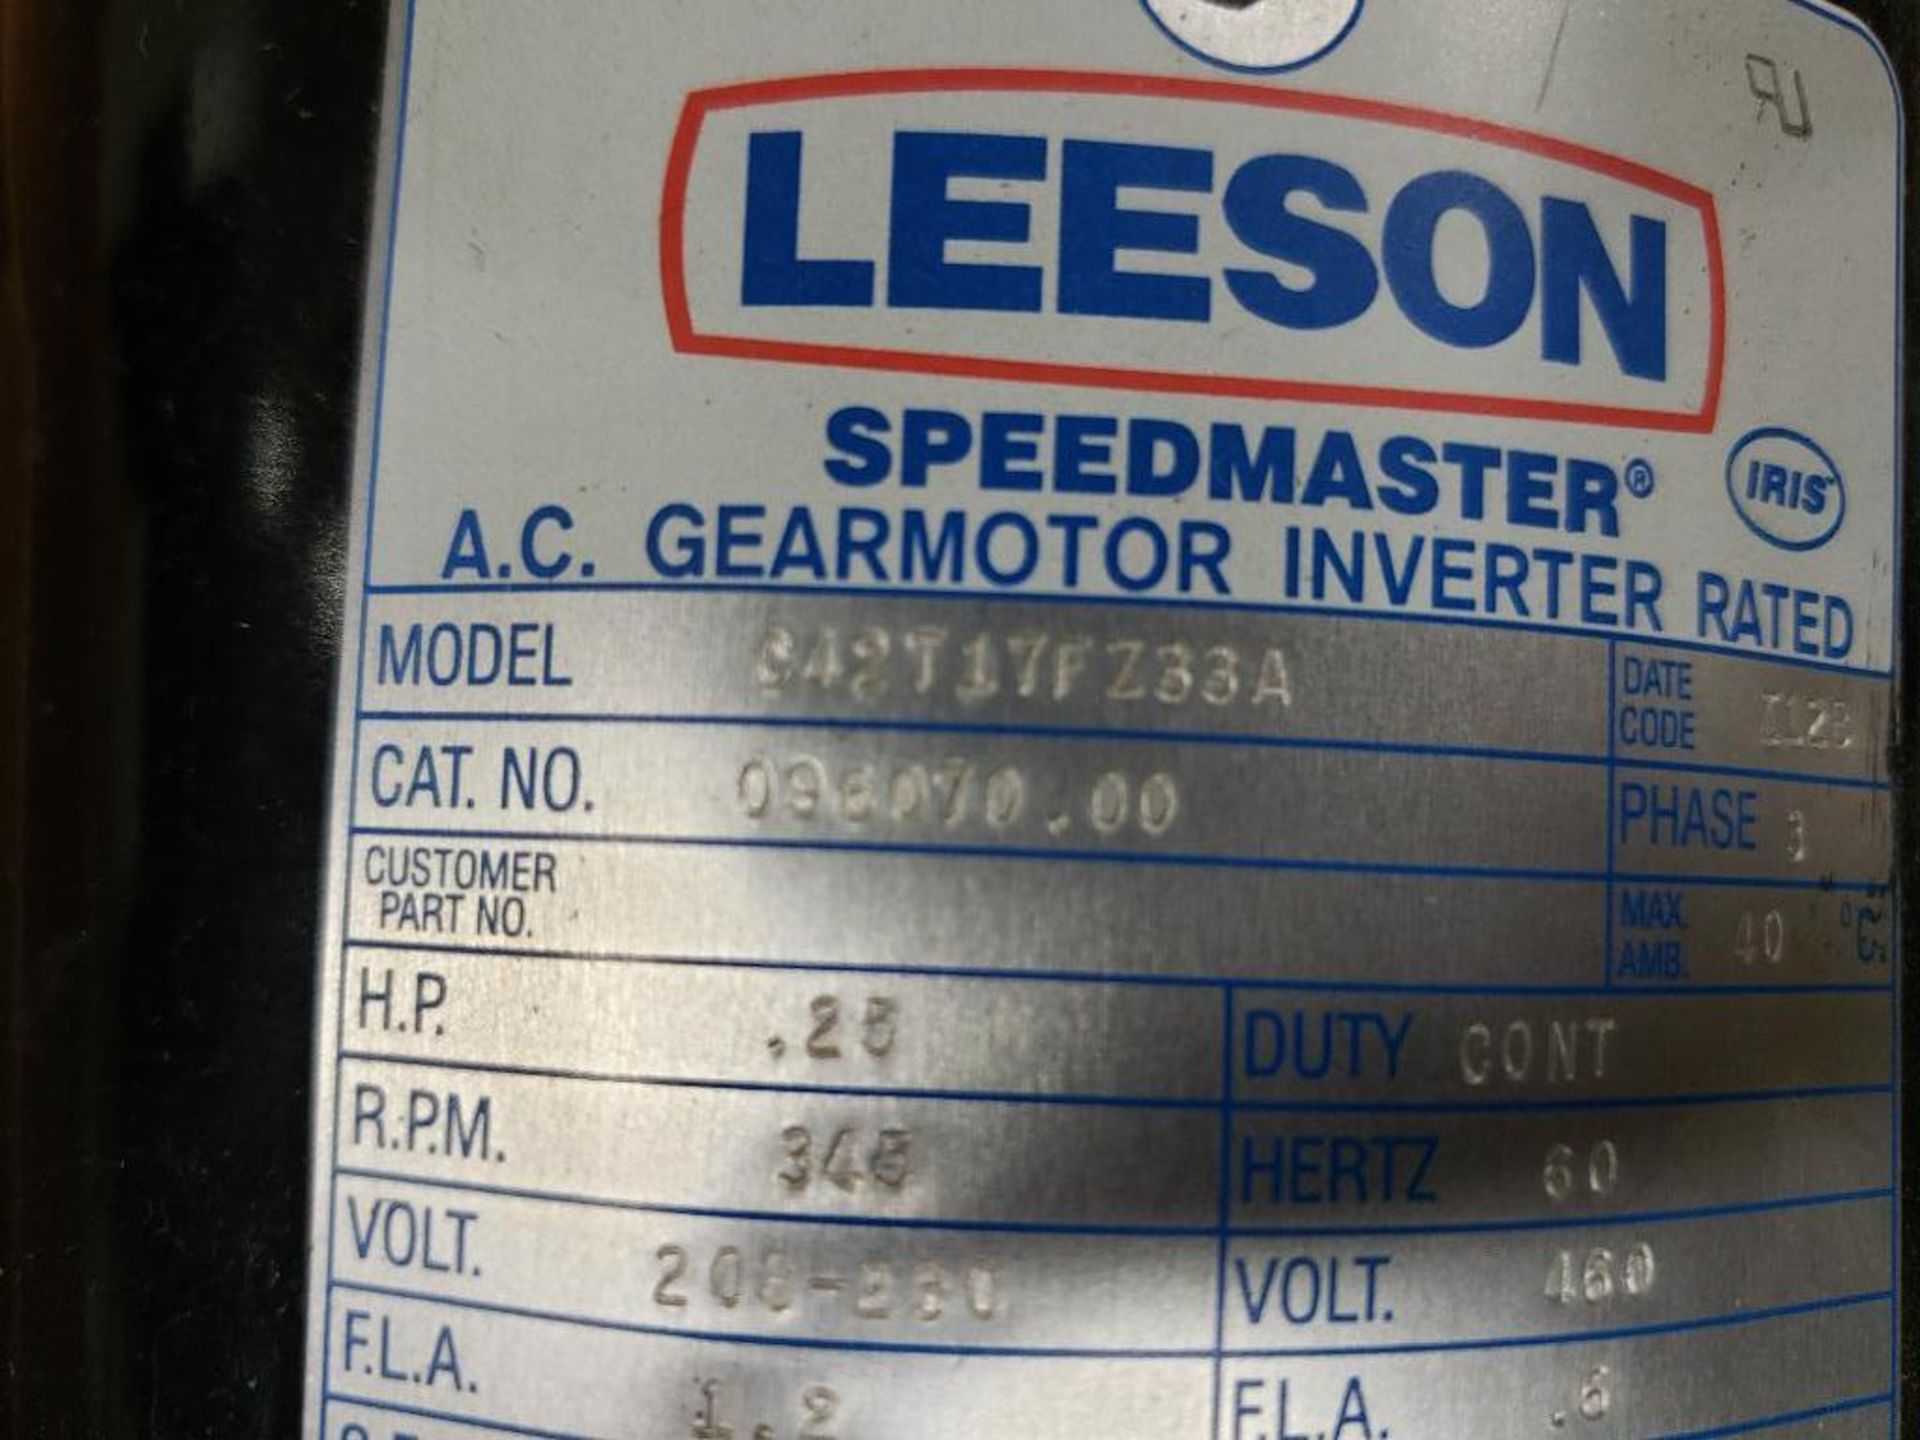 Leeson Speedmaster gear motor mdoel C42T17FZ33A. - Image 3 of 4